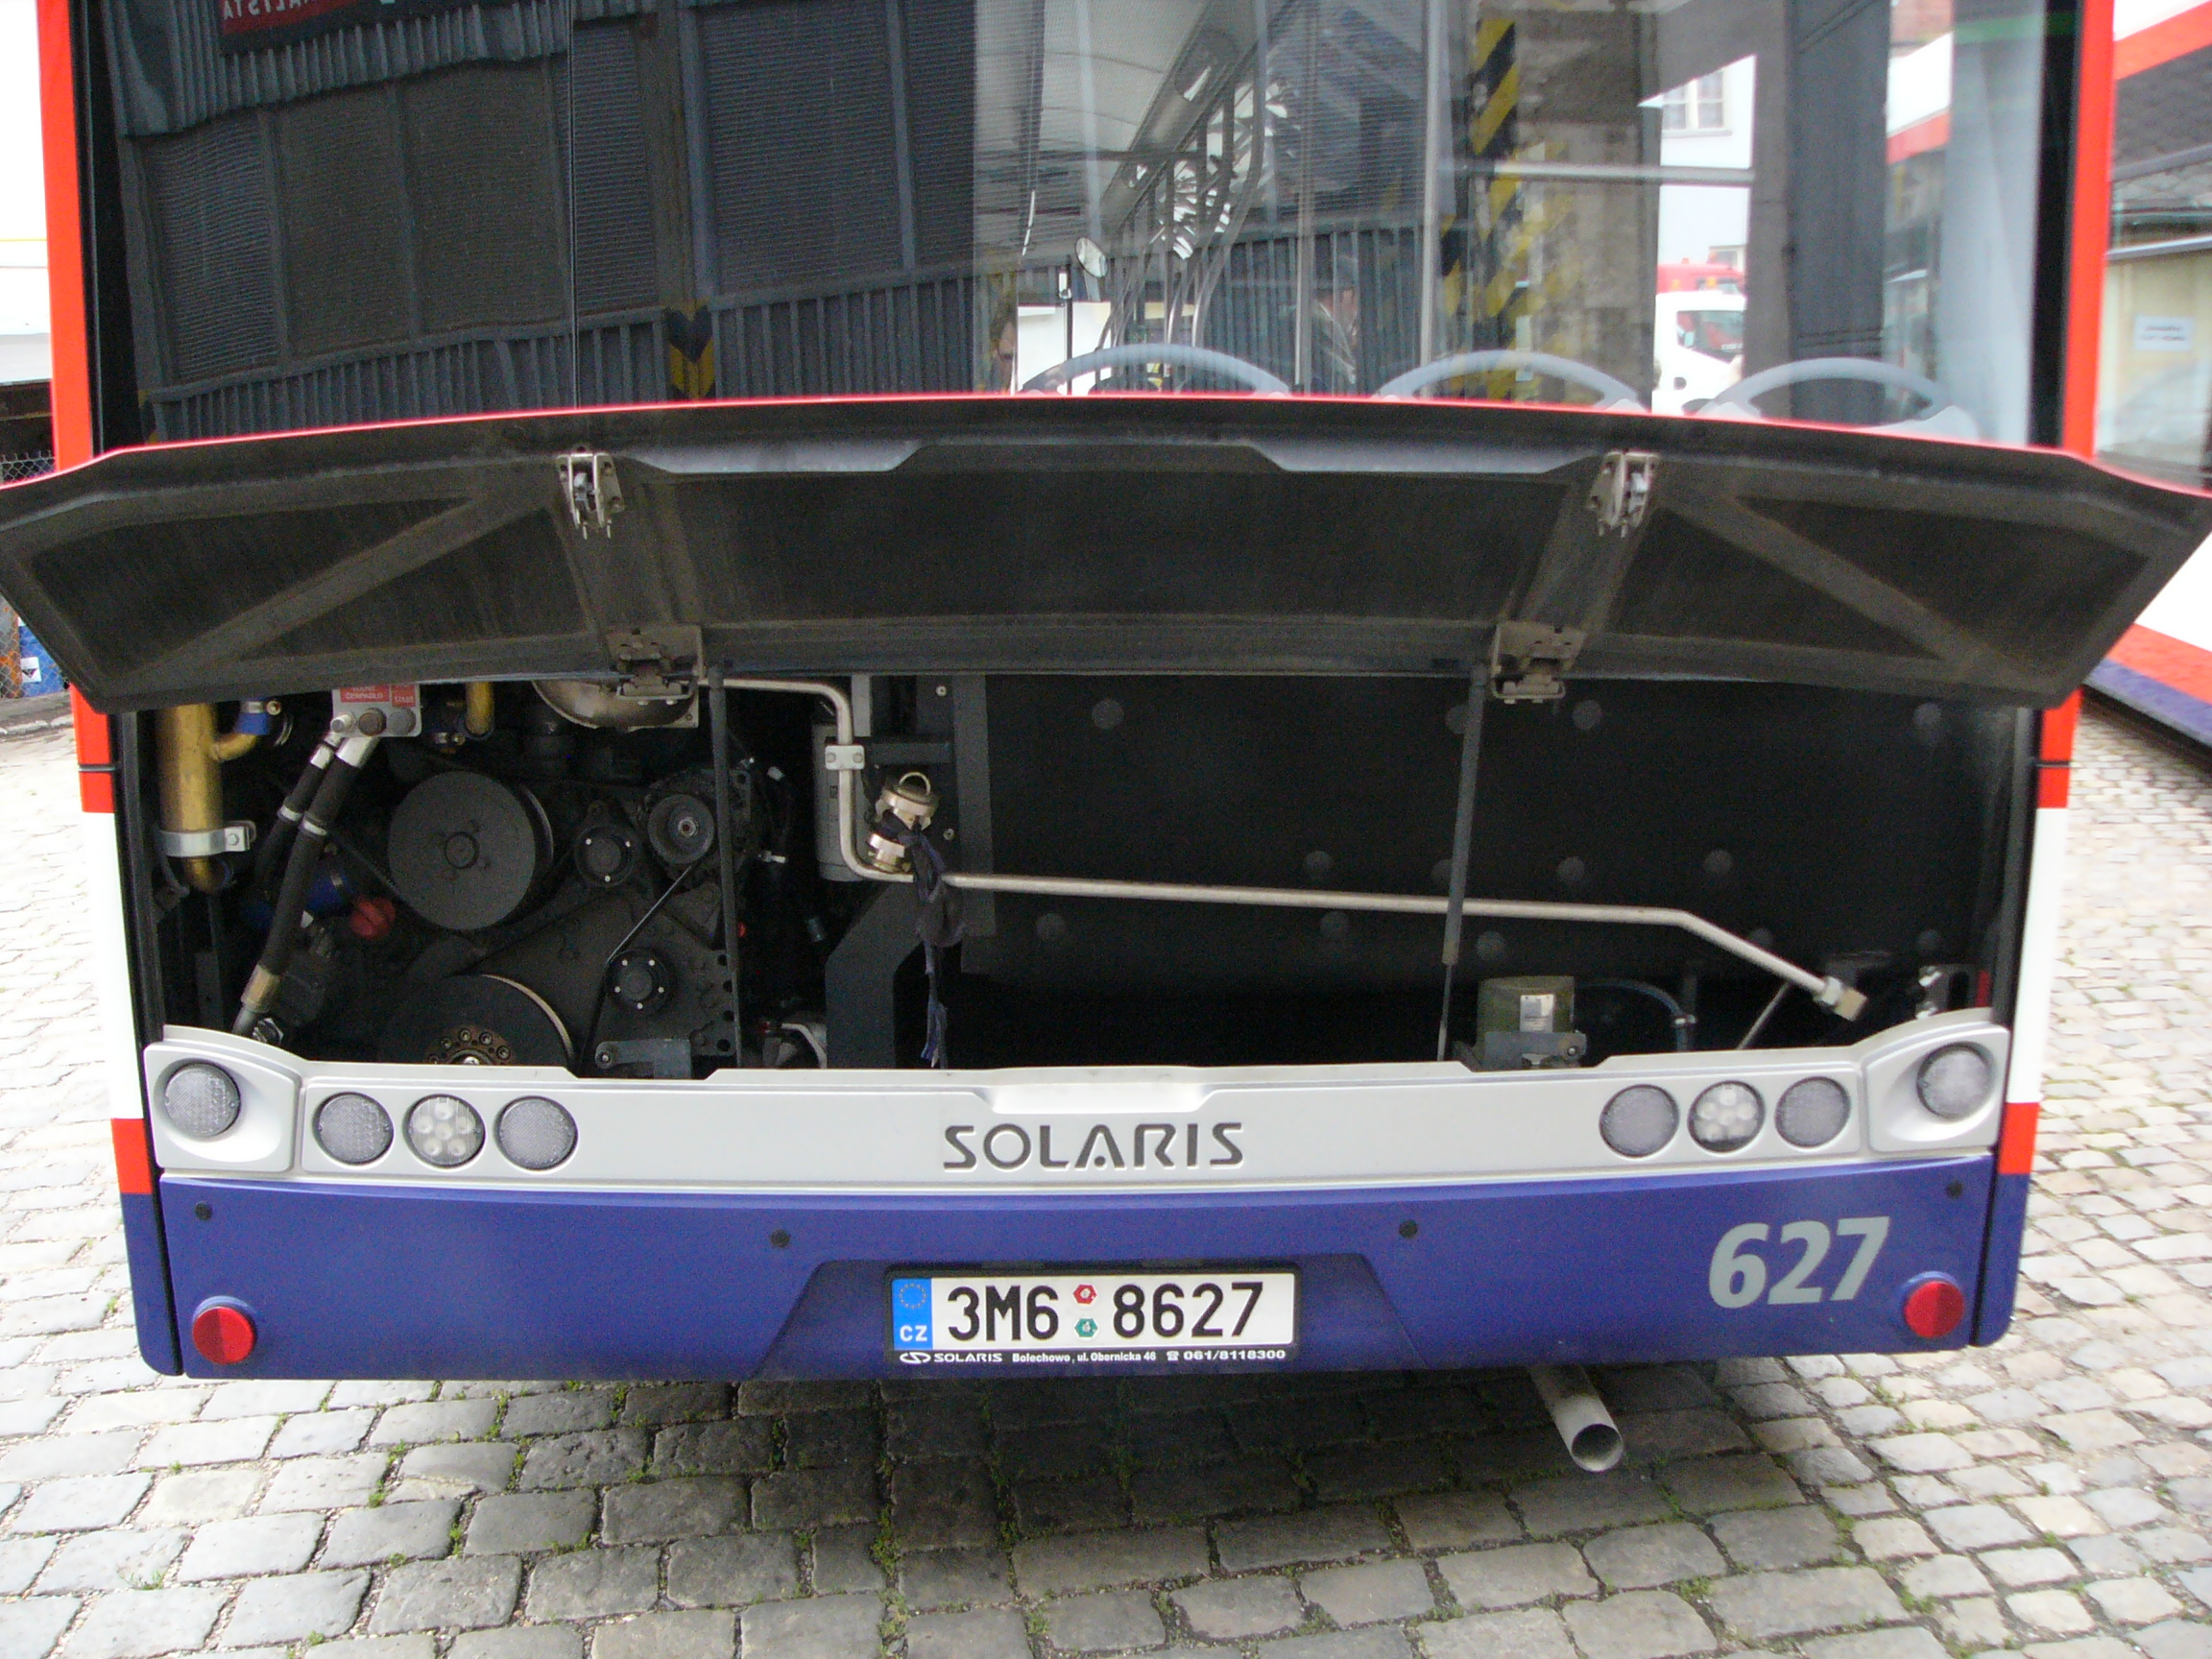 File:Solaris Urbino 12 engine.jpg - Wikimedia Commons